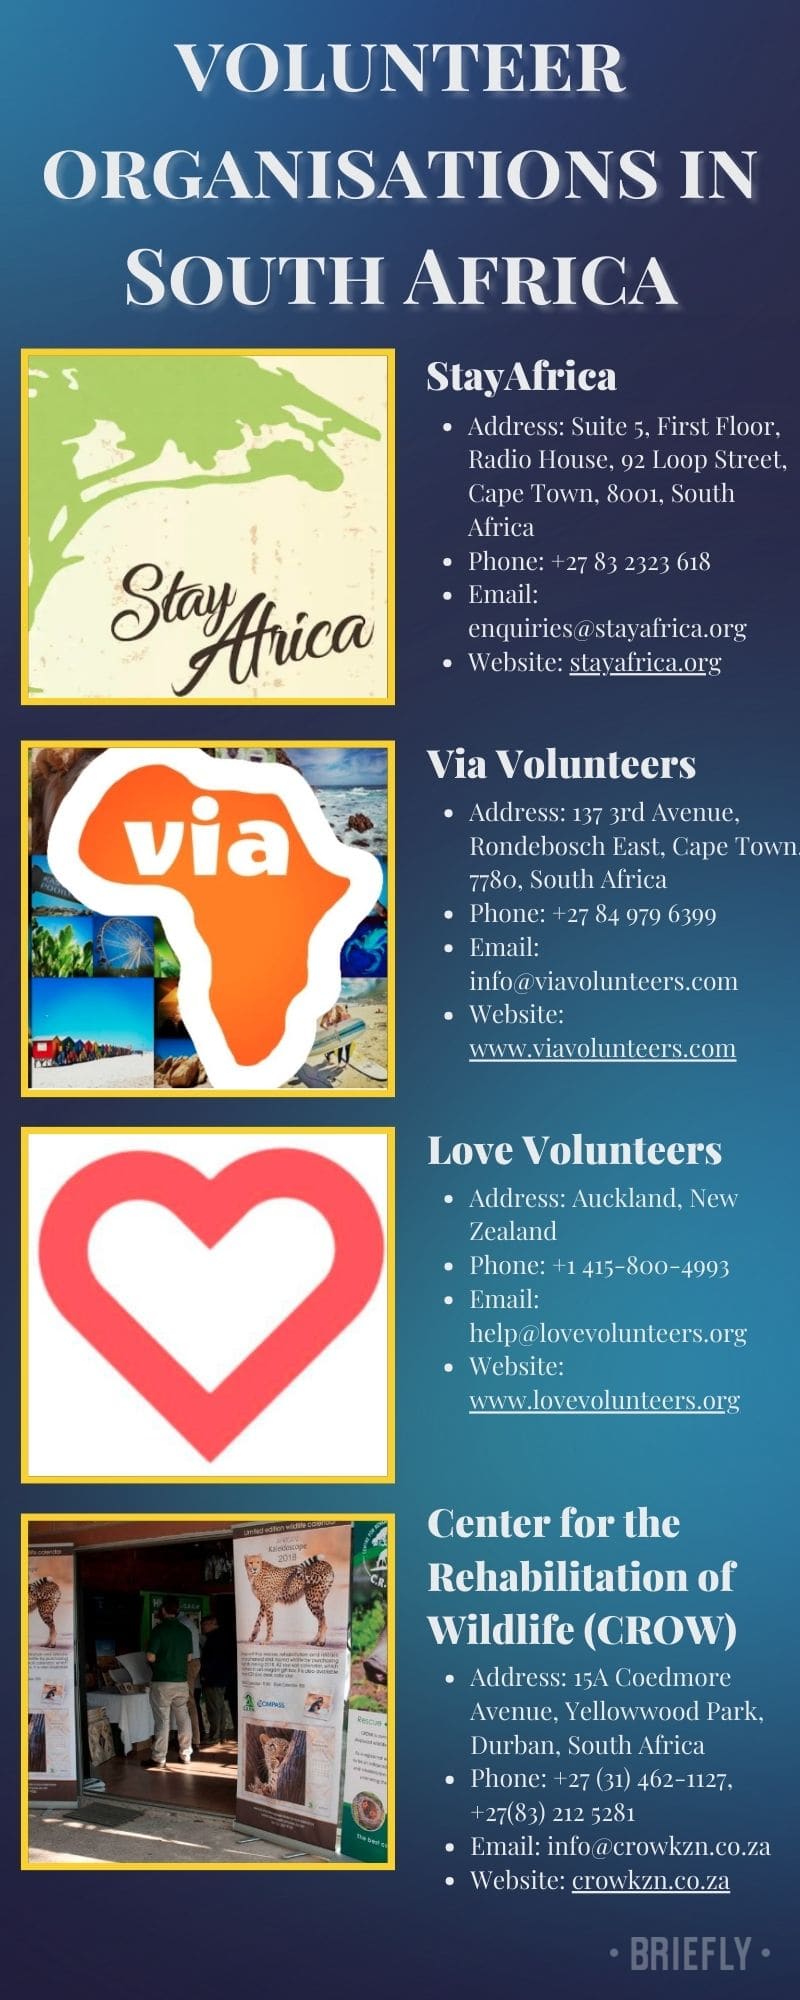 Volunteer organisations in South Africa